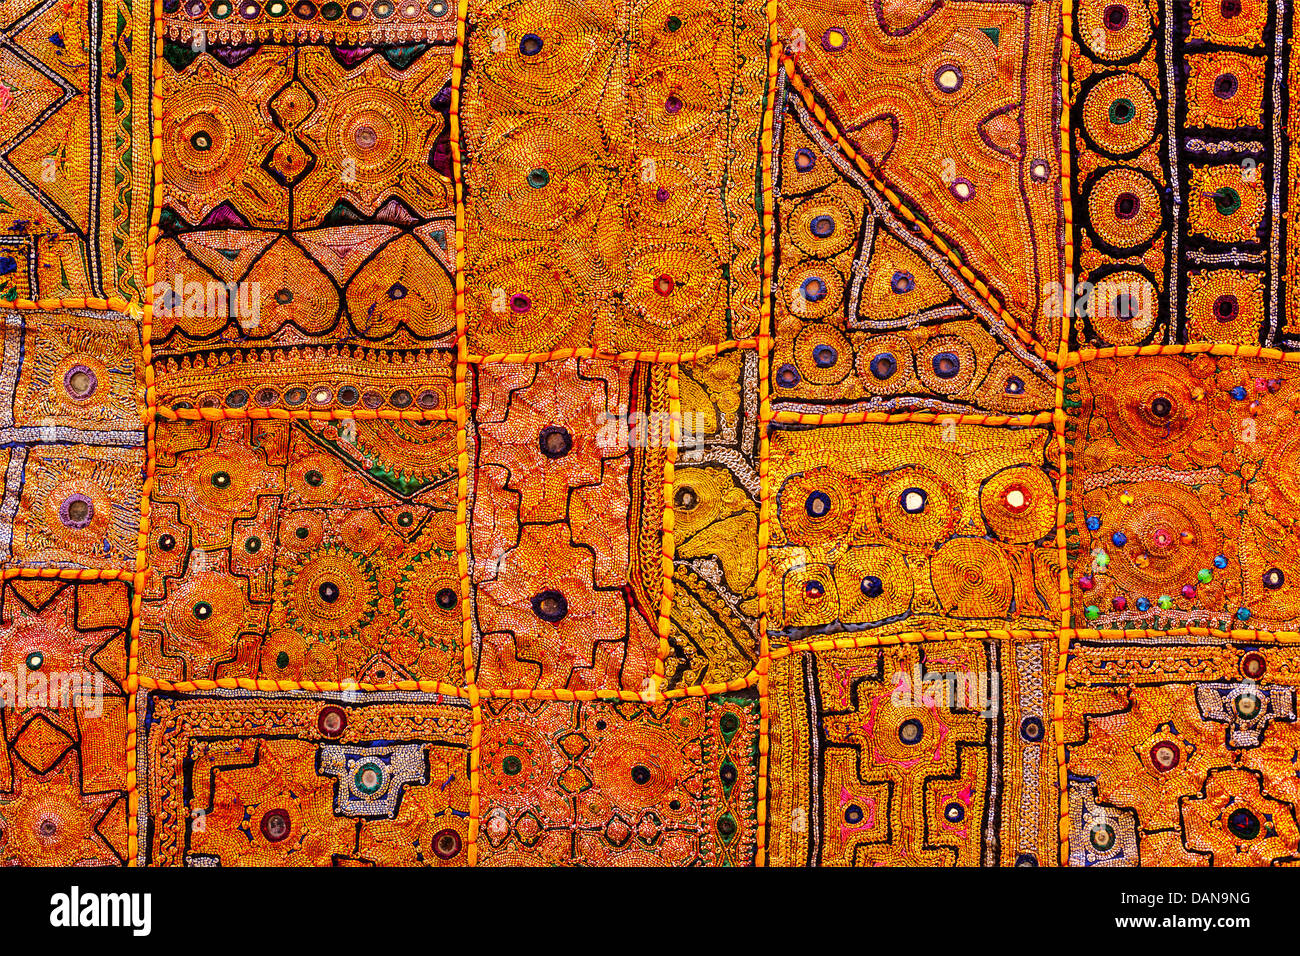 El tejido de la India colorida textura del fondo textil alfombra patchwork quilt. La India Foto de stock